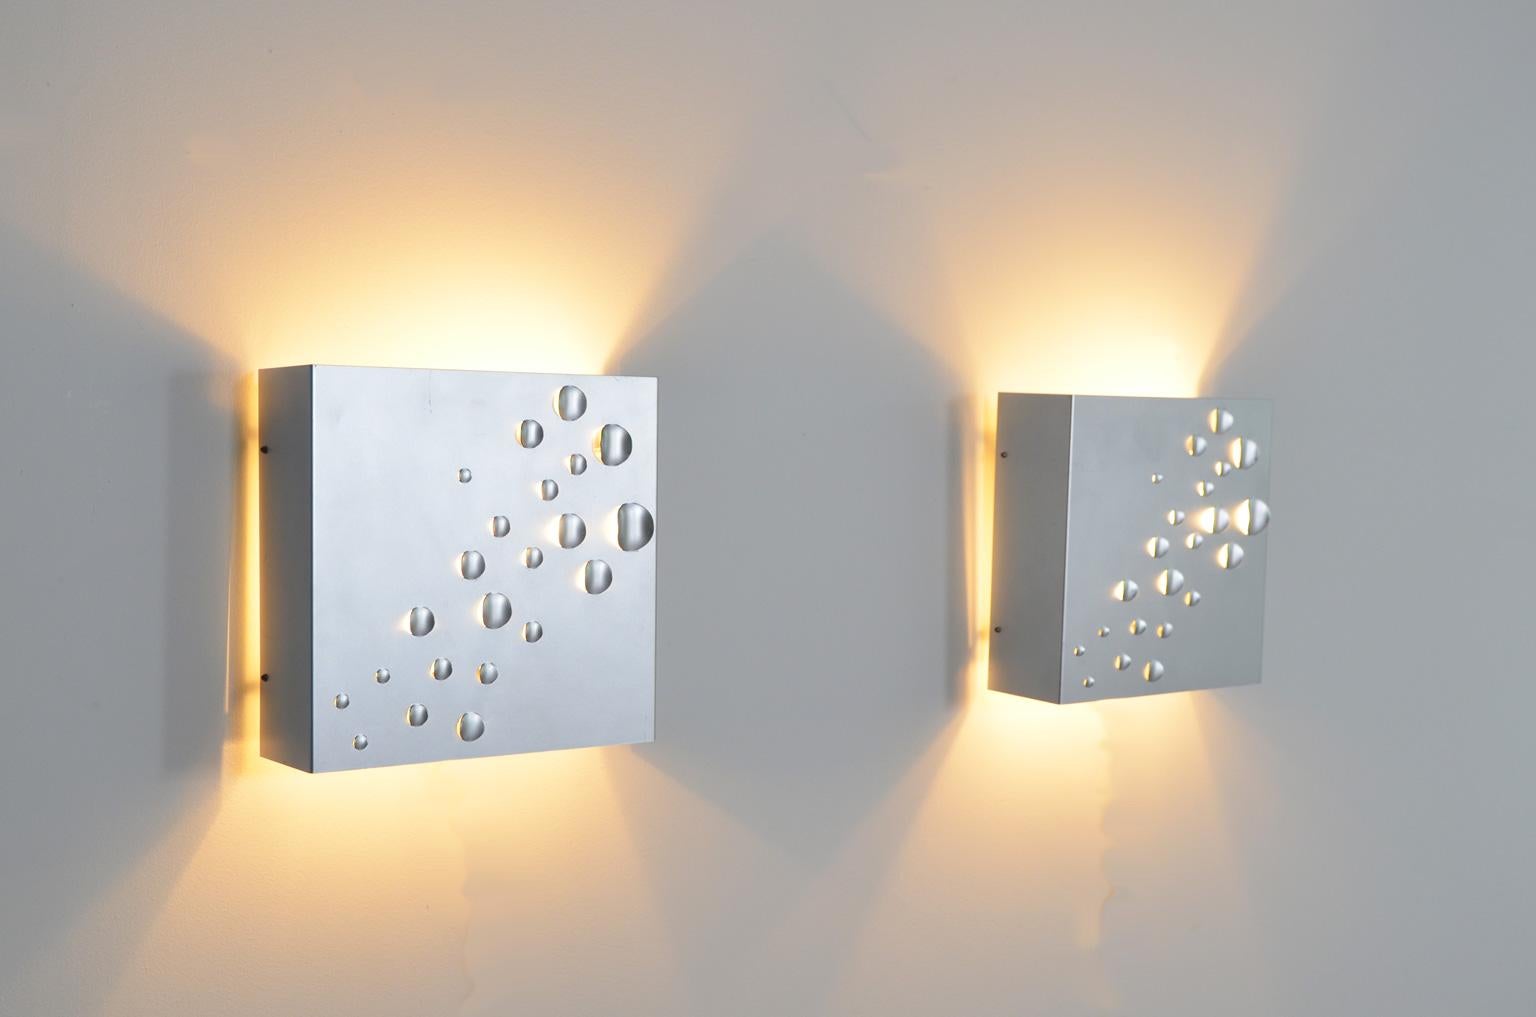 Diese Wandleuchten aus Metall aus den 1960er Jahren, auch bekannt als Modell C1624, wurden von Jelle Jelles für RAAK, Amsterdam, entworfen. Das perforierte Metall sorgt für einen spektakulären Lichteffekt. Kein Wunder, dass die Lampe Star shower